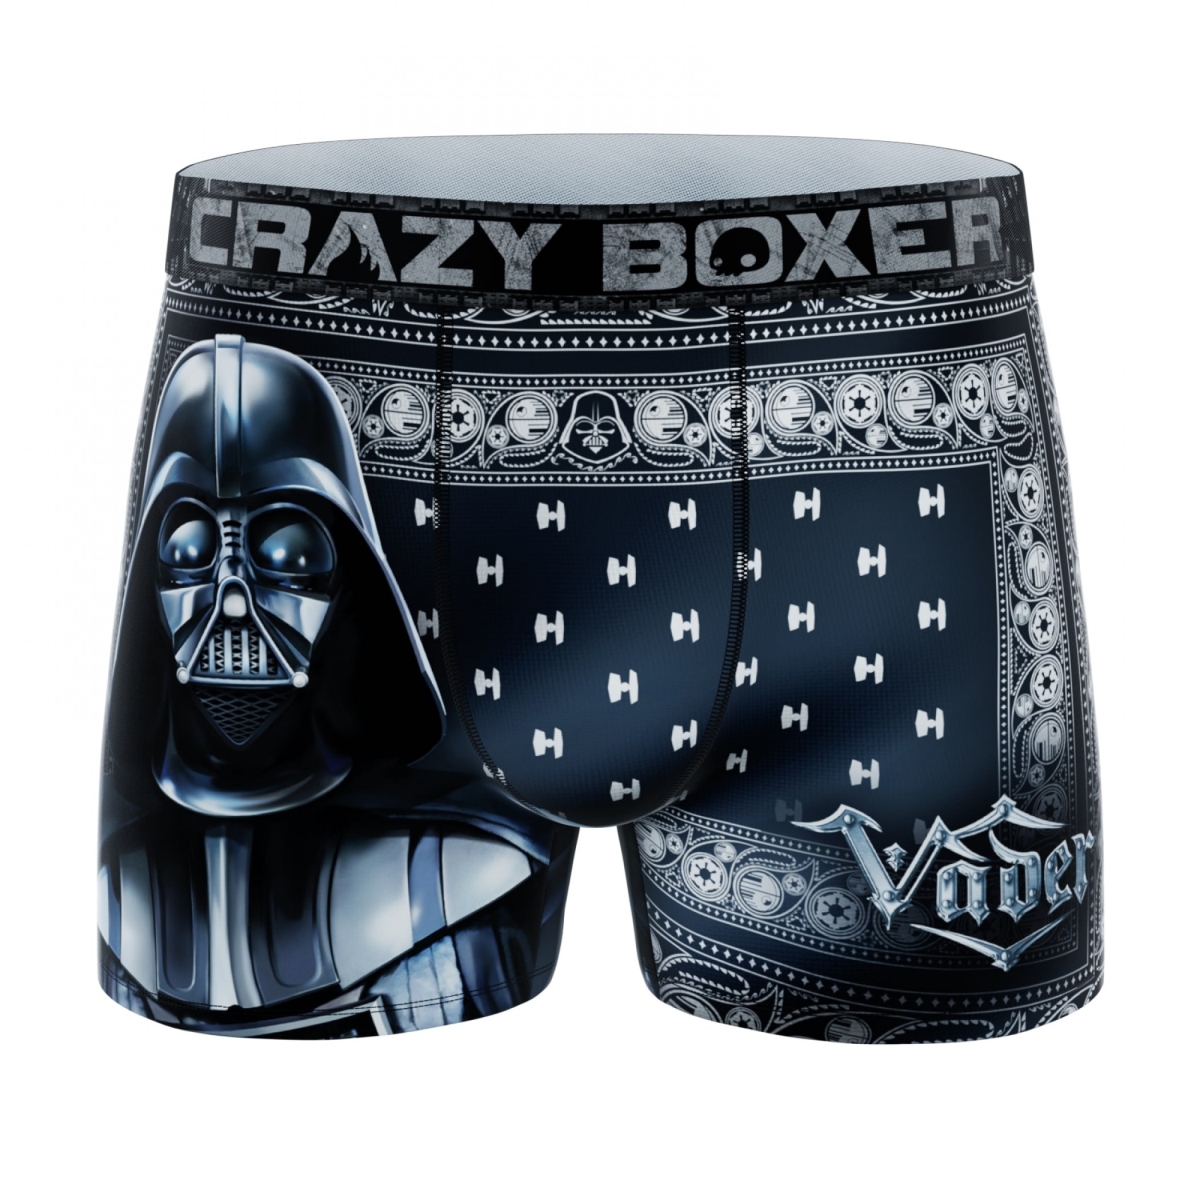 861469-xlarge-40 Crazy Boxer Darth Vader Ornate Mens Boxer Briefs, Black - Extra Large - 40-42 -  Star Wars, 861469-xlarge(40